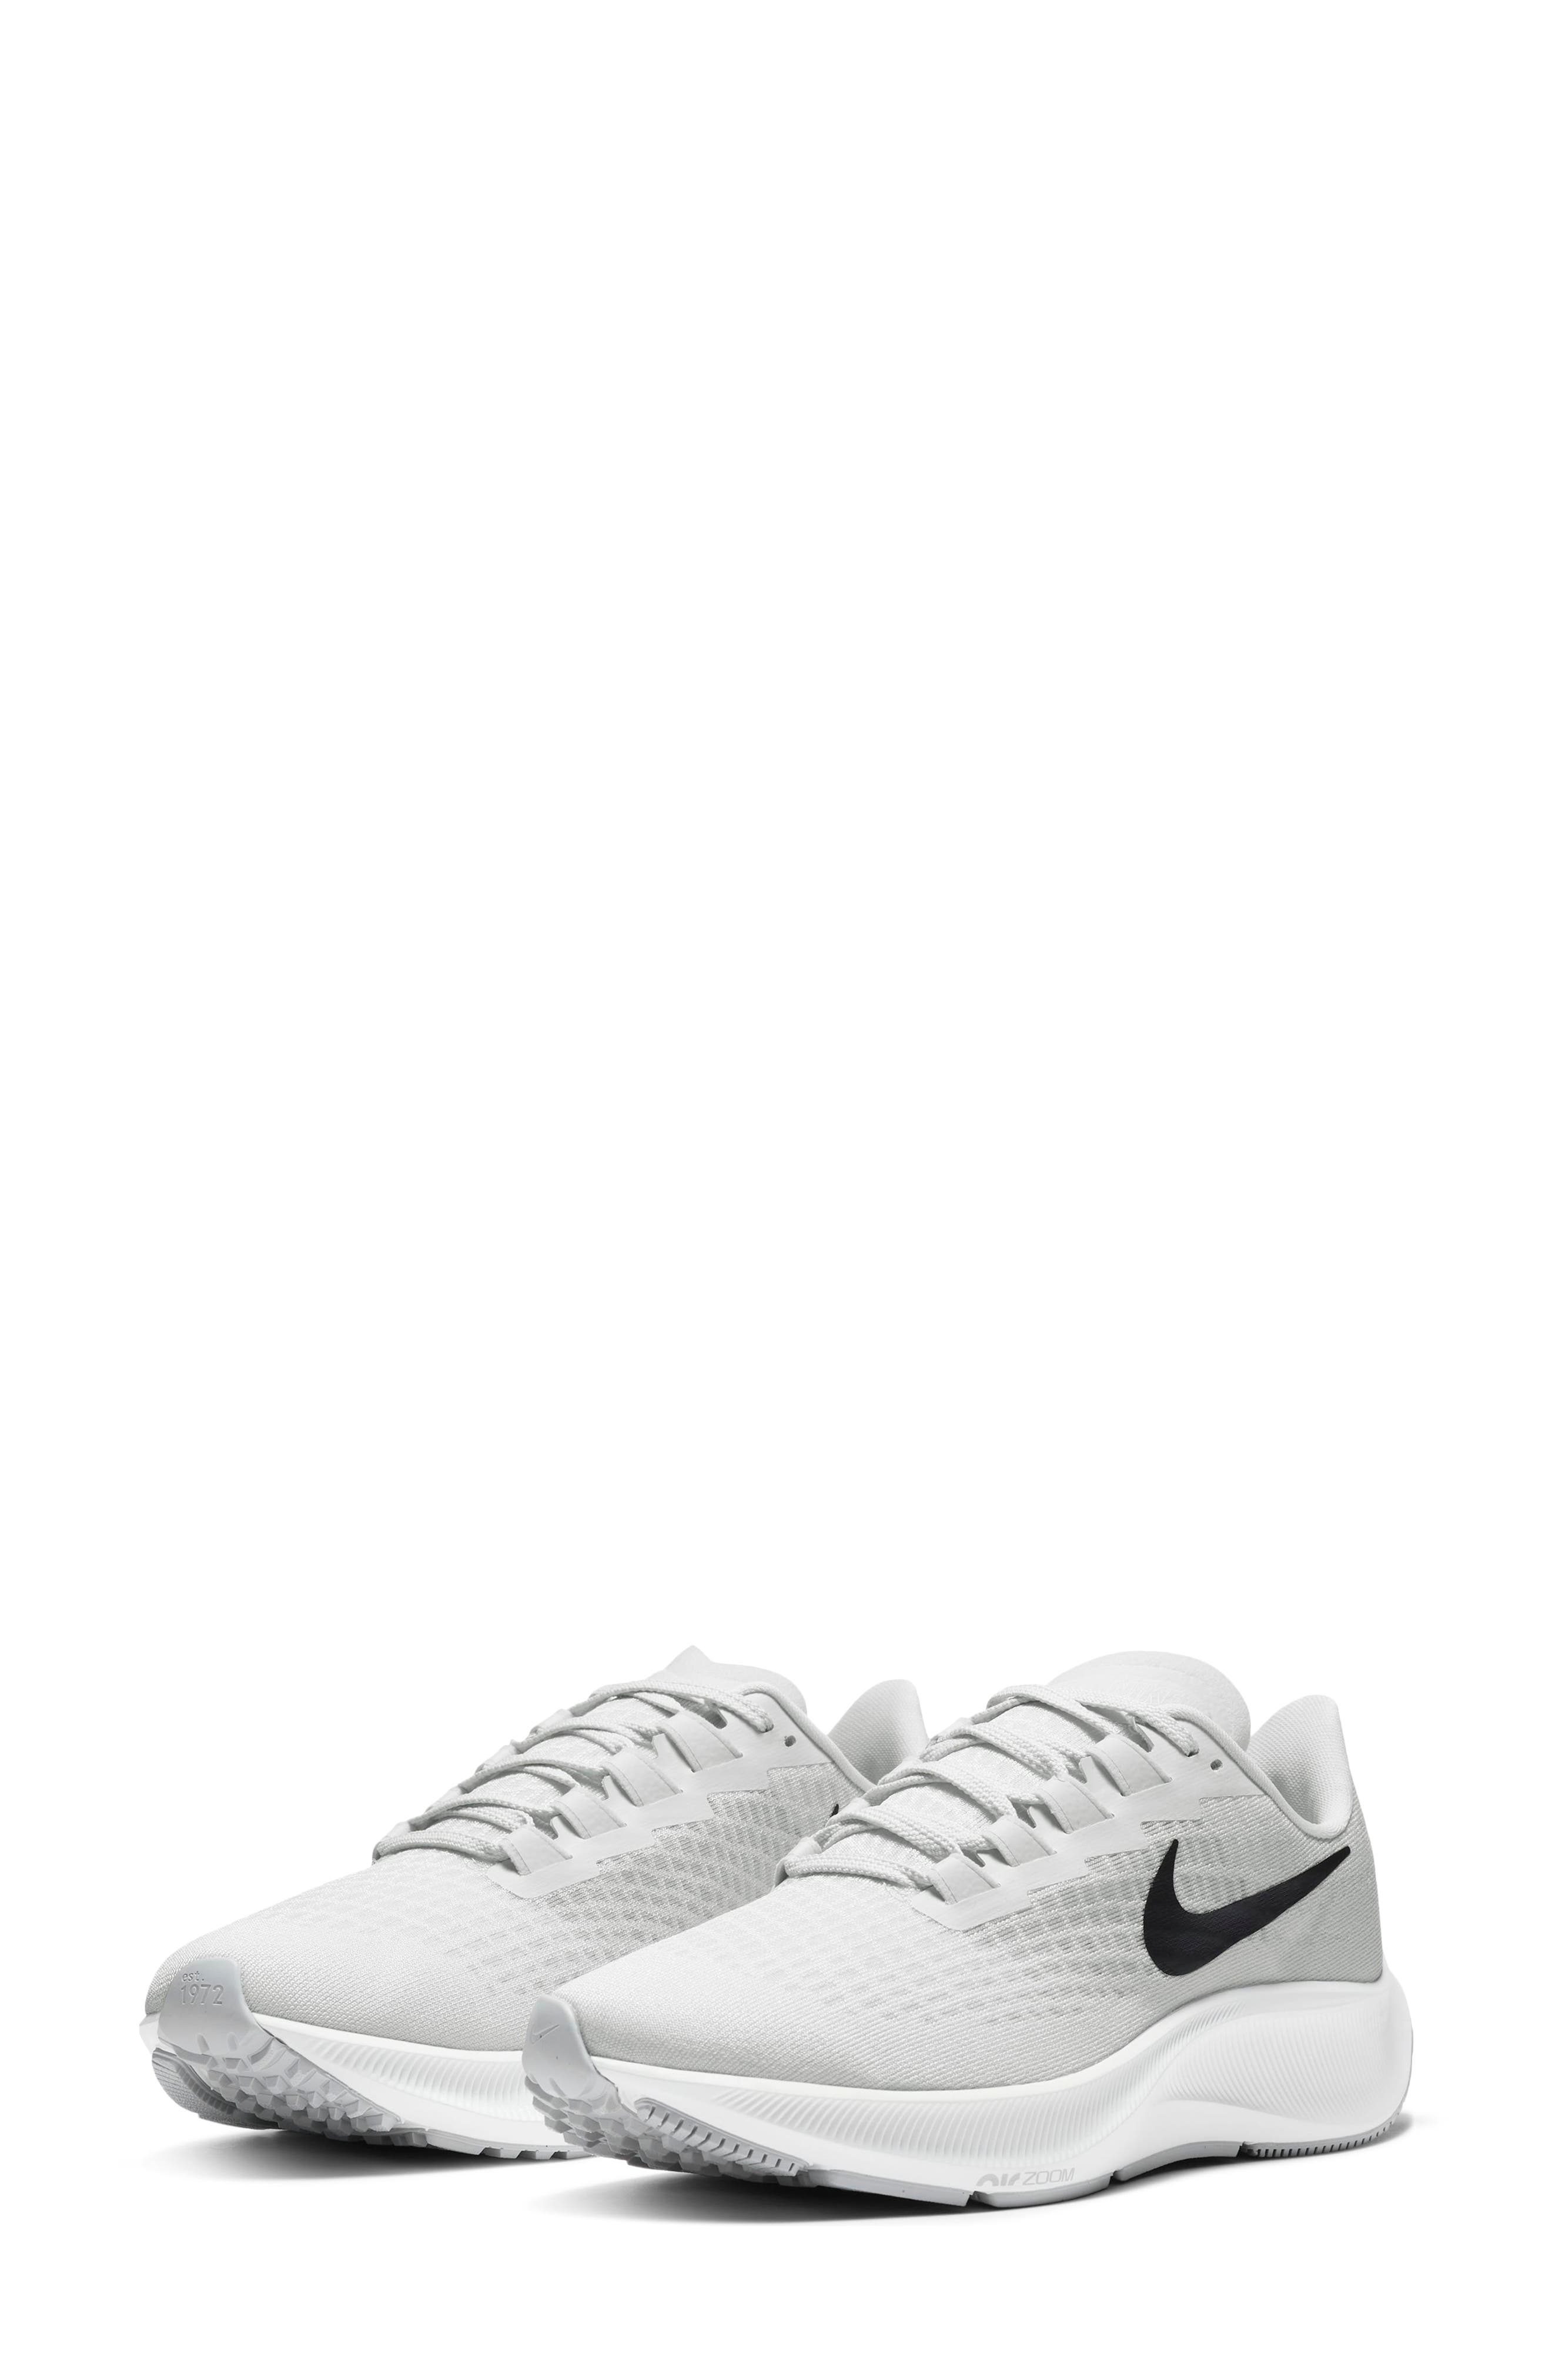 Nike Sneakers \u0026 Athletic Shoes | Nordstrom